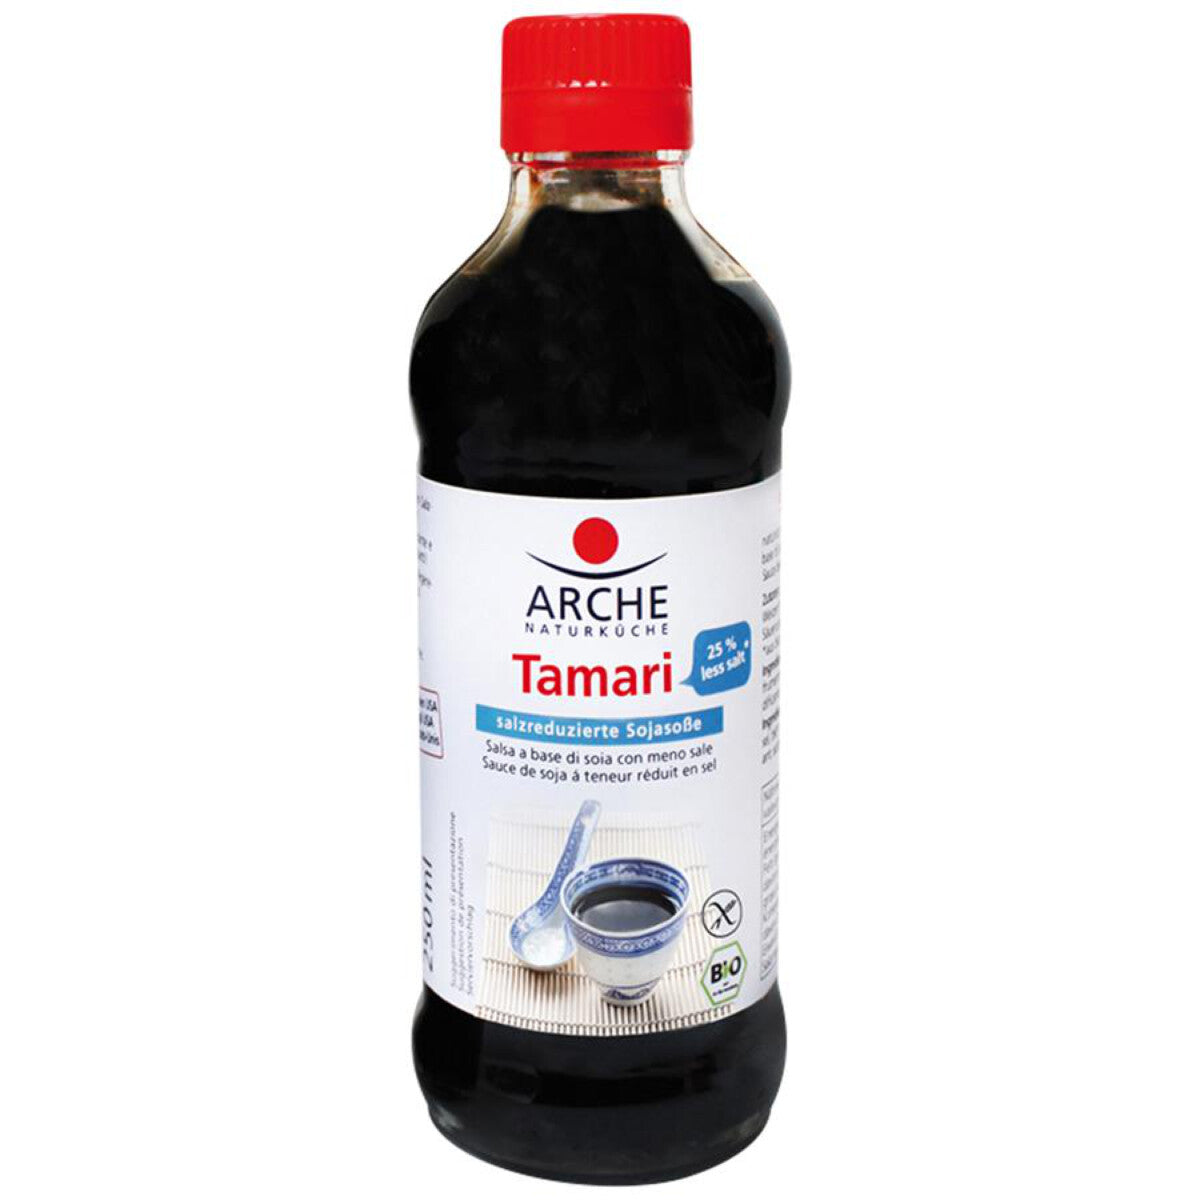 ARCHE Tamari salzreduziert - 250 ml